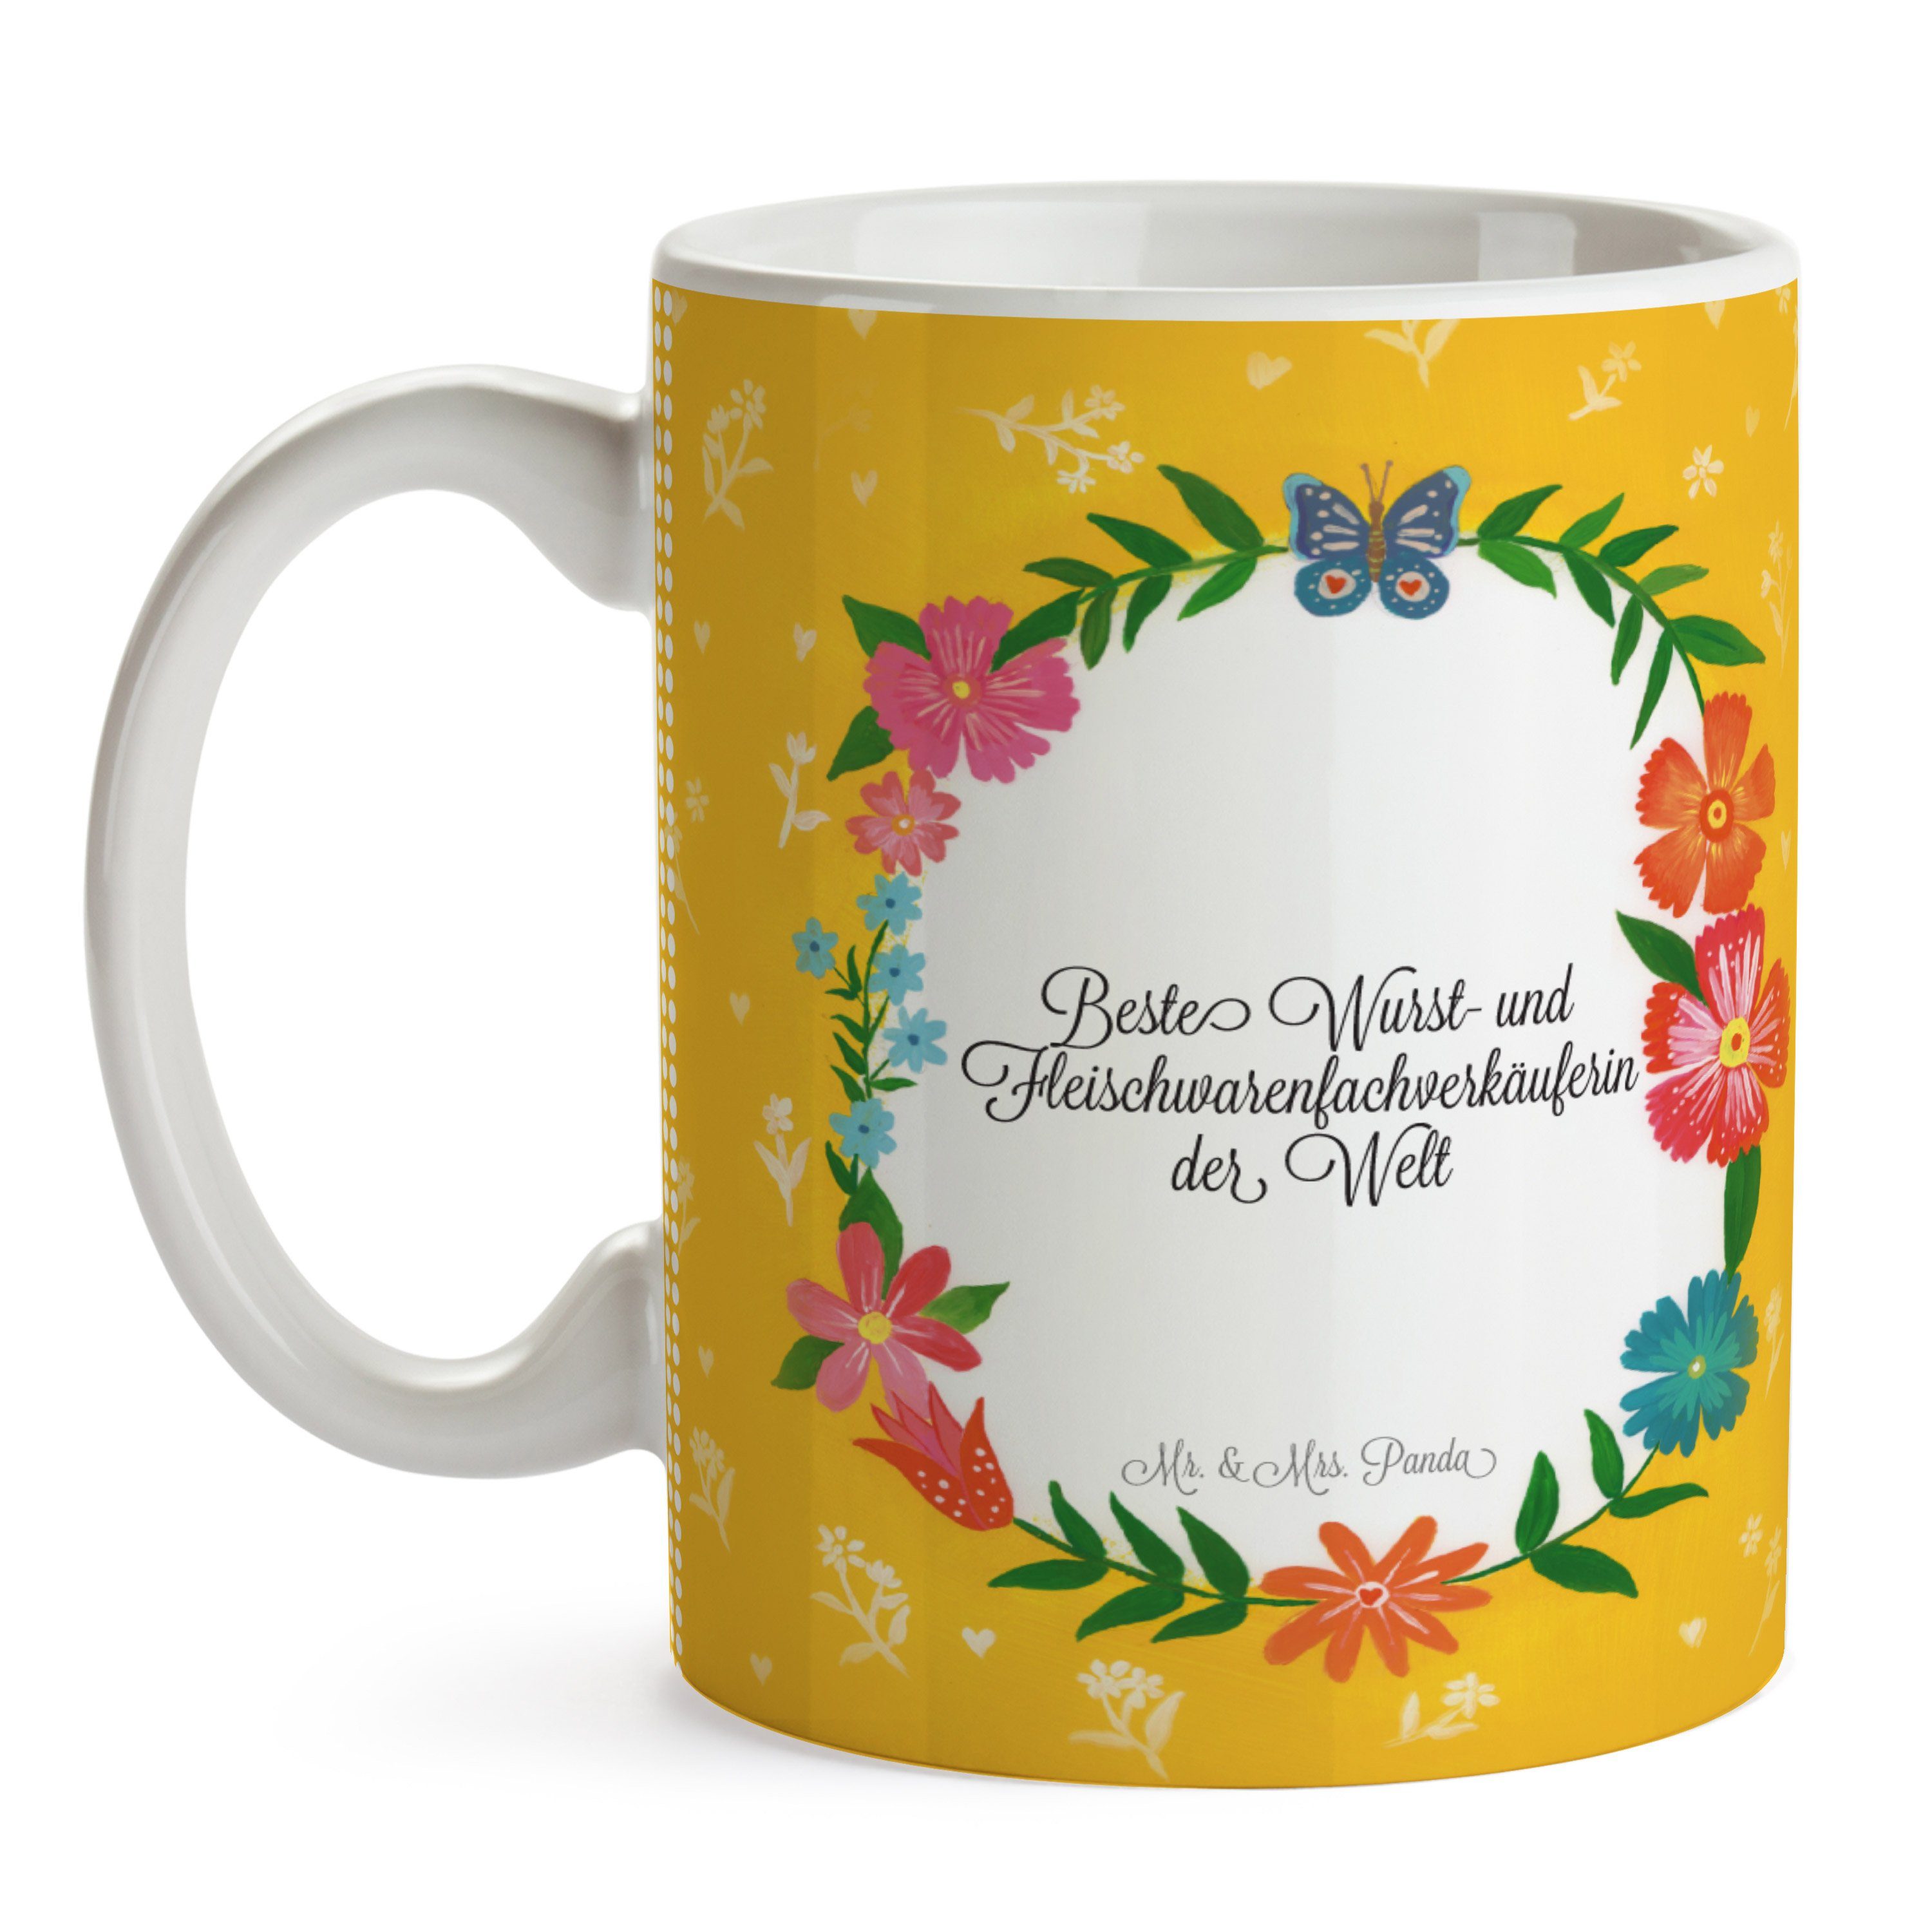 Mr. & Mrs. Panda Keramik und Fleischwarenfachverkäuferin Kaffe, Geschenk, - Tasse Wurst- Gratulation